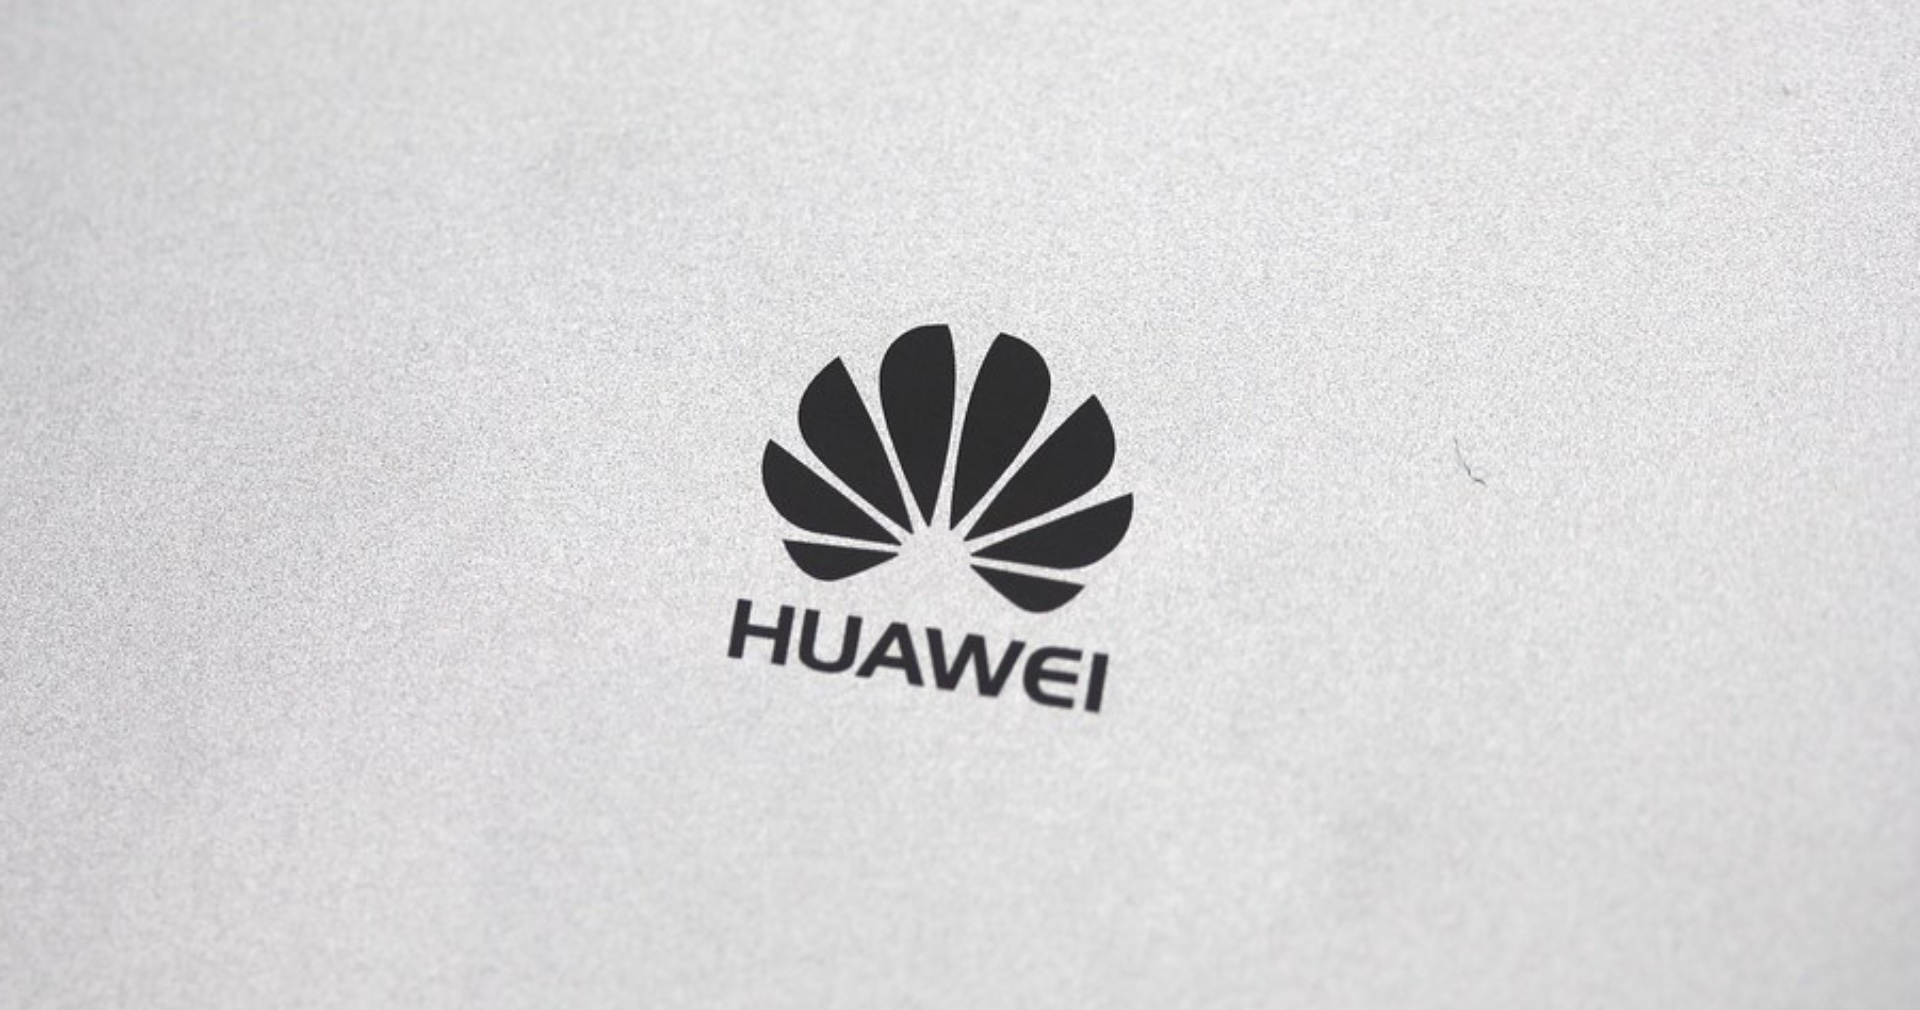 Huawei เผยผลประกอบการ รายได้บริษัทยังเติบโตแม้ถูกสหรัฐฯ แบนก็ตาม